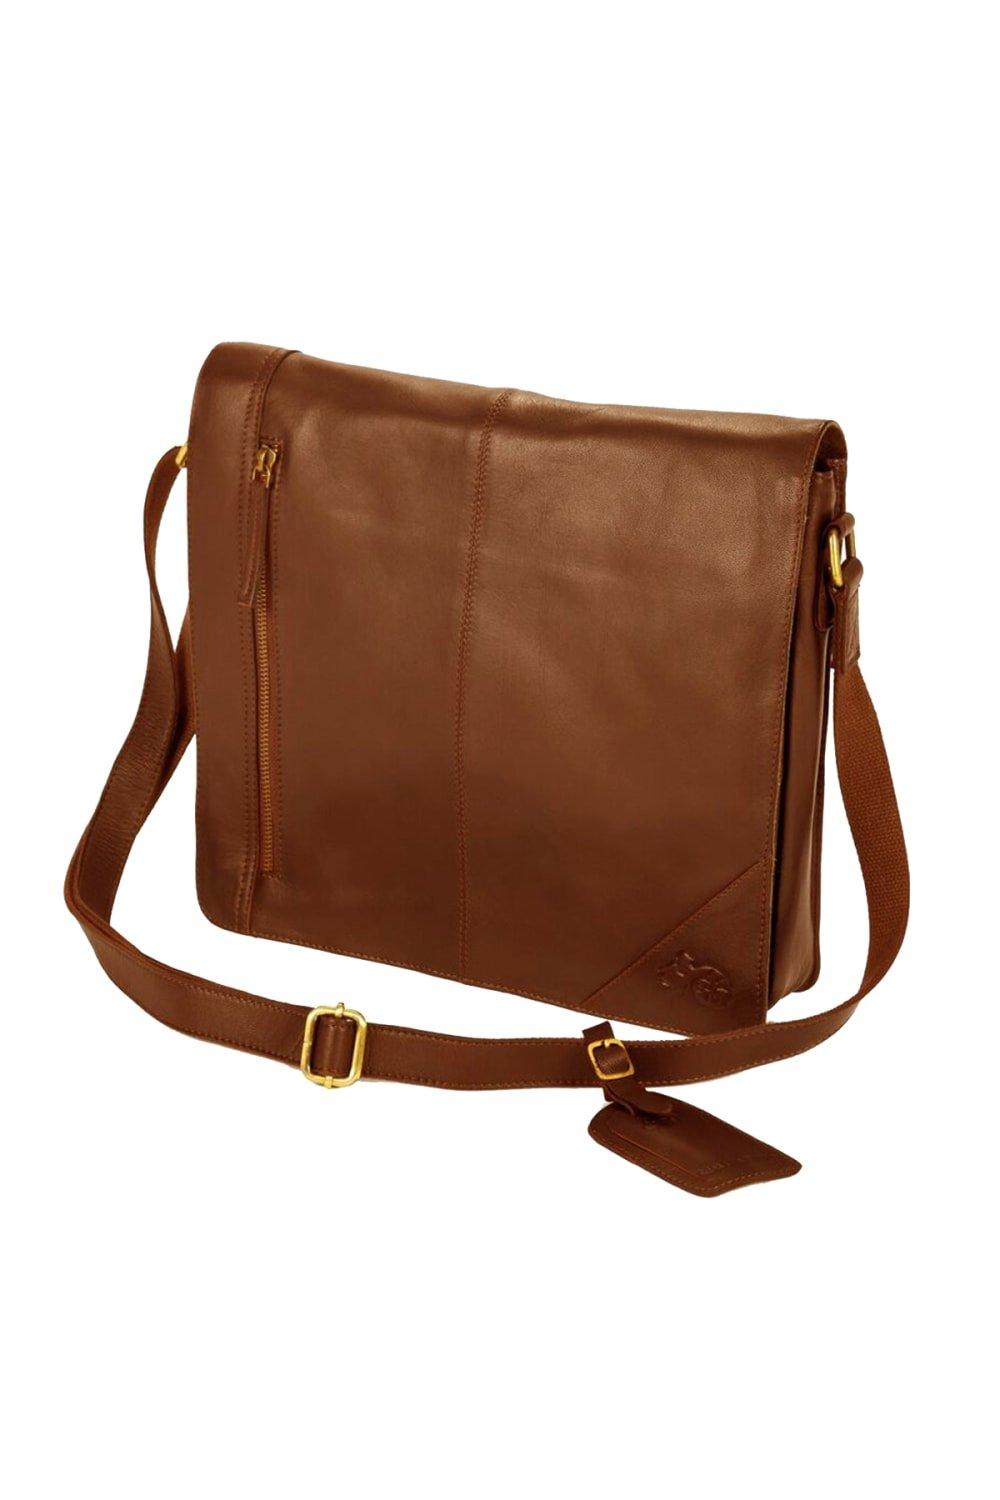 сумка jungle story сумка холщовая с внутренним и внешними карманами Широкая сумка-мессенджер Eastern Counties Leather, коричневый